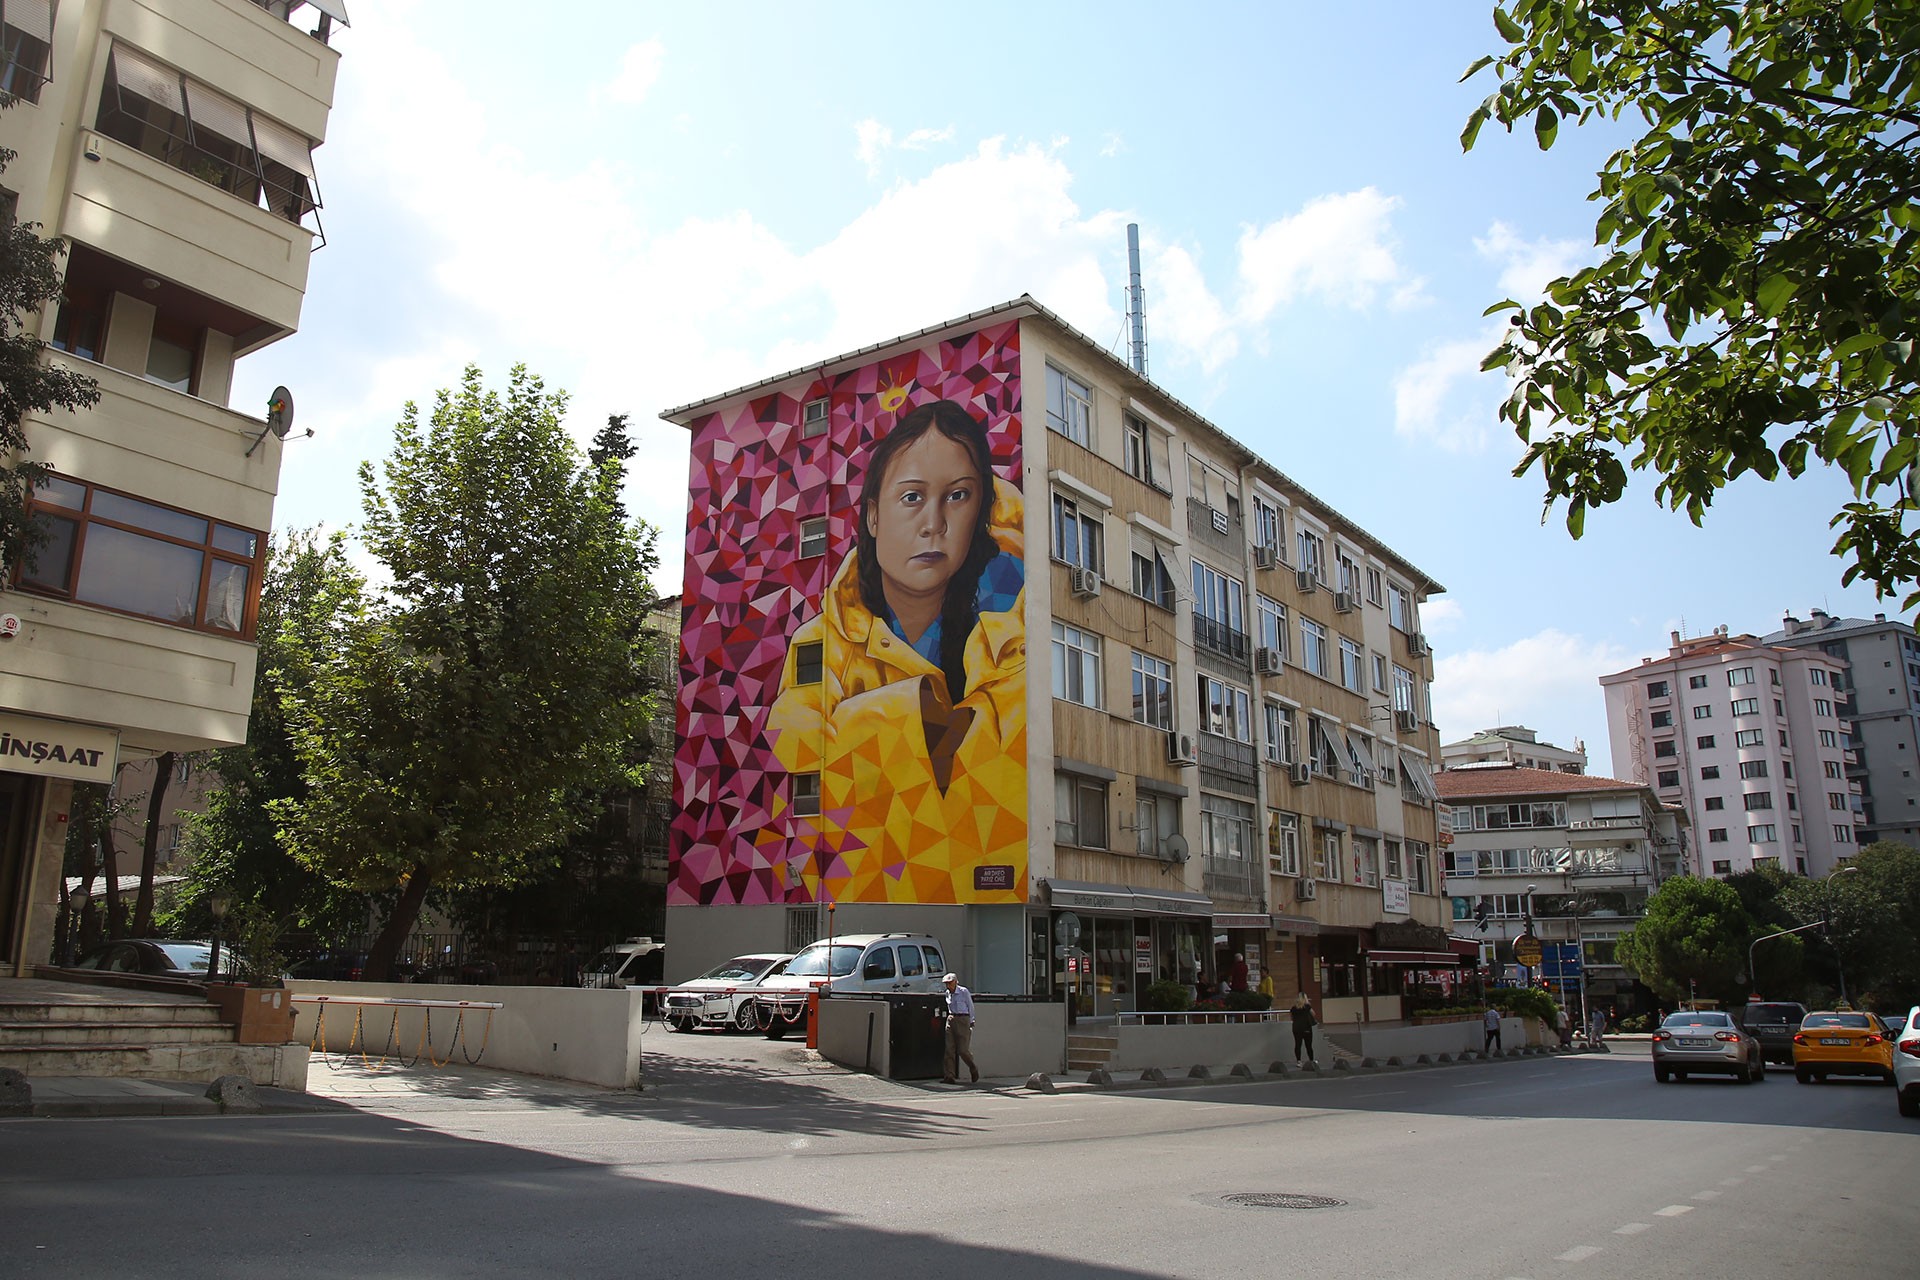 16 yaşındaki iklim aktivisti Greta Thunberg’in portresi Kadıköy duvarlarında